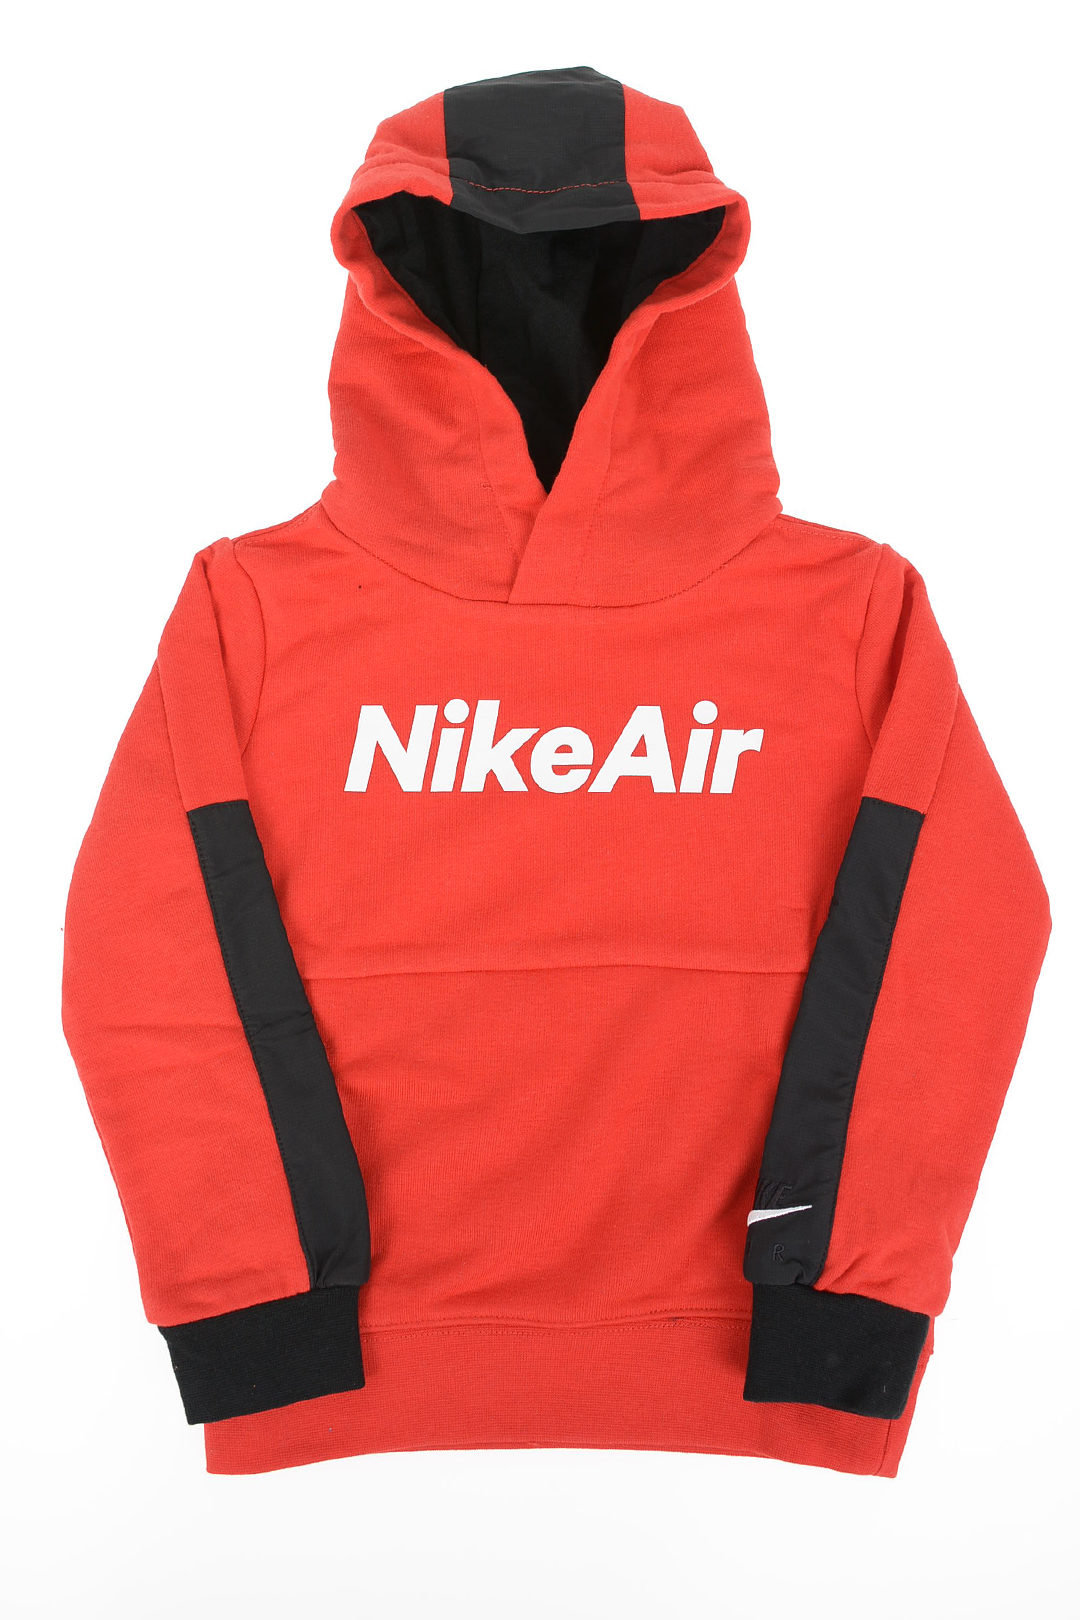 verlegen timer Kaap Nike KIDS AIR Hoodie Sweatshirt boys - Glamood Outlet